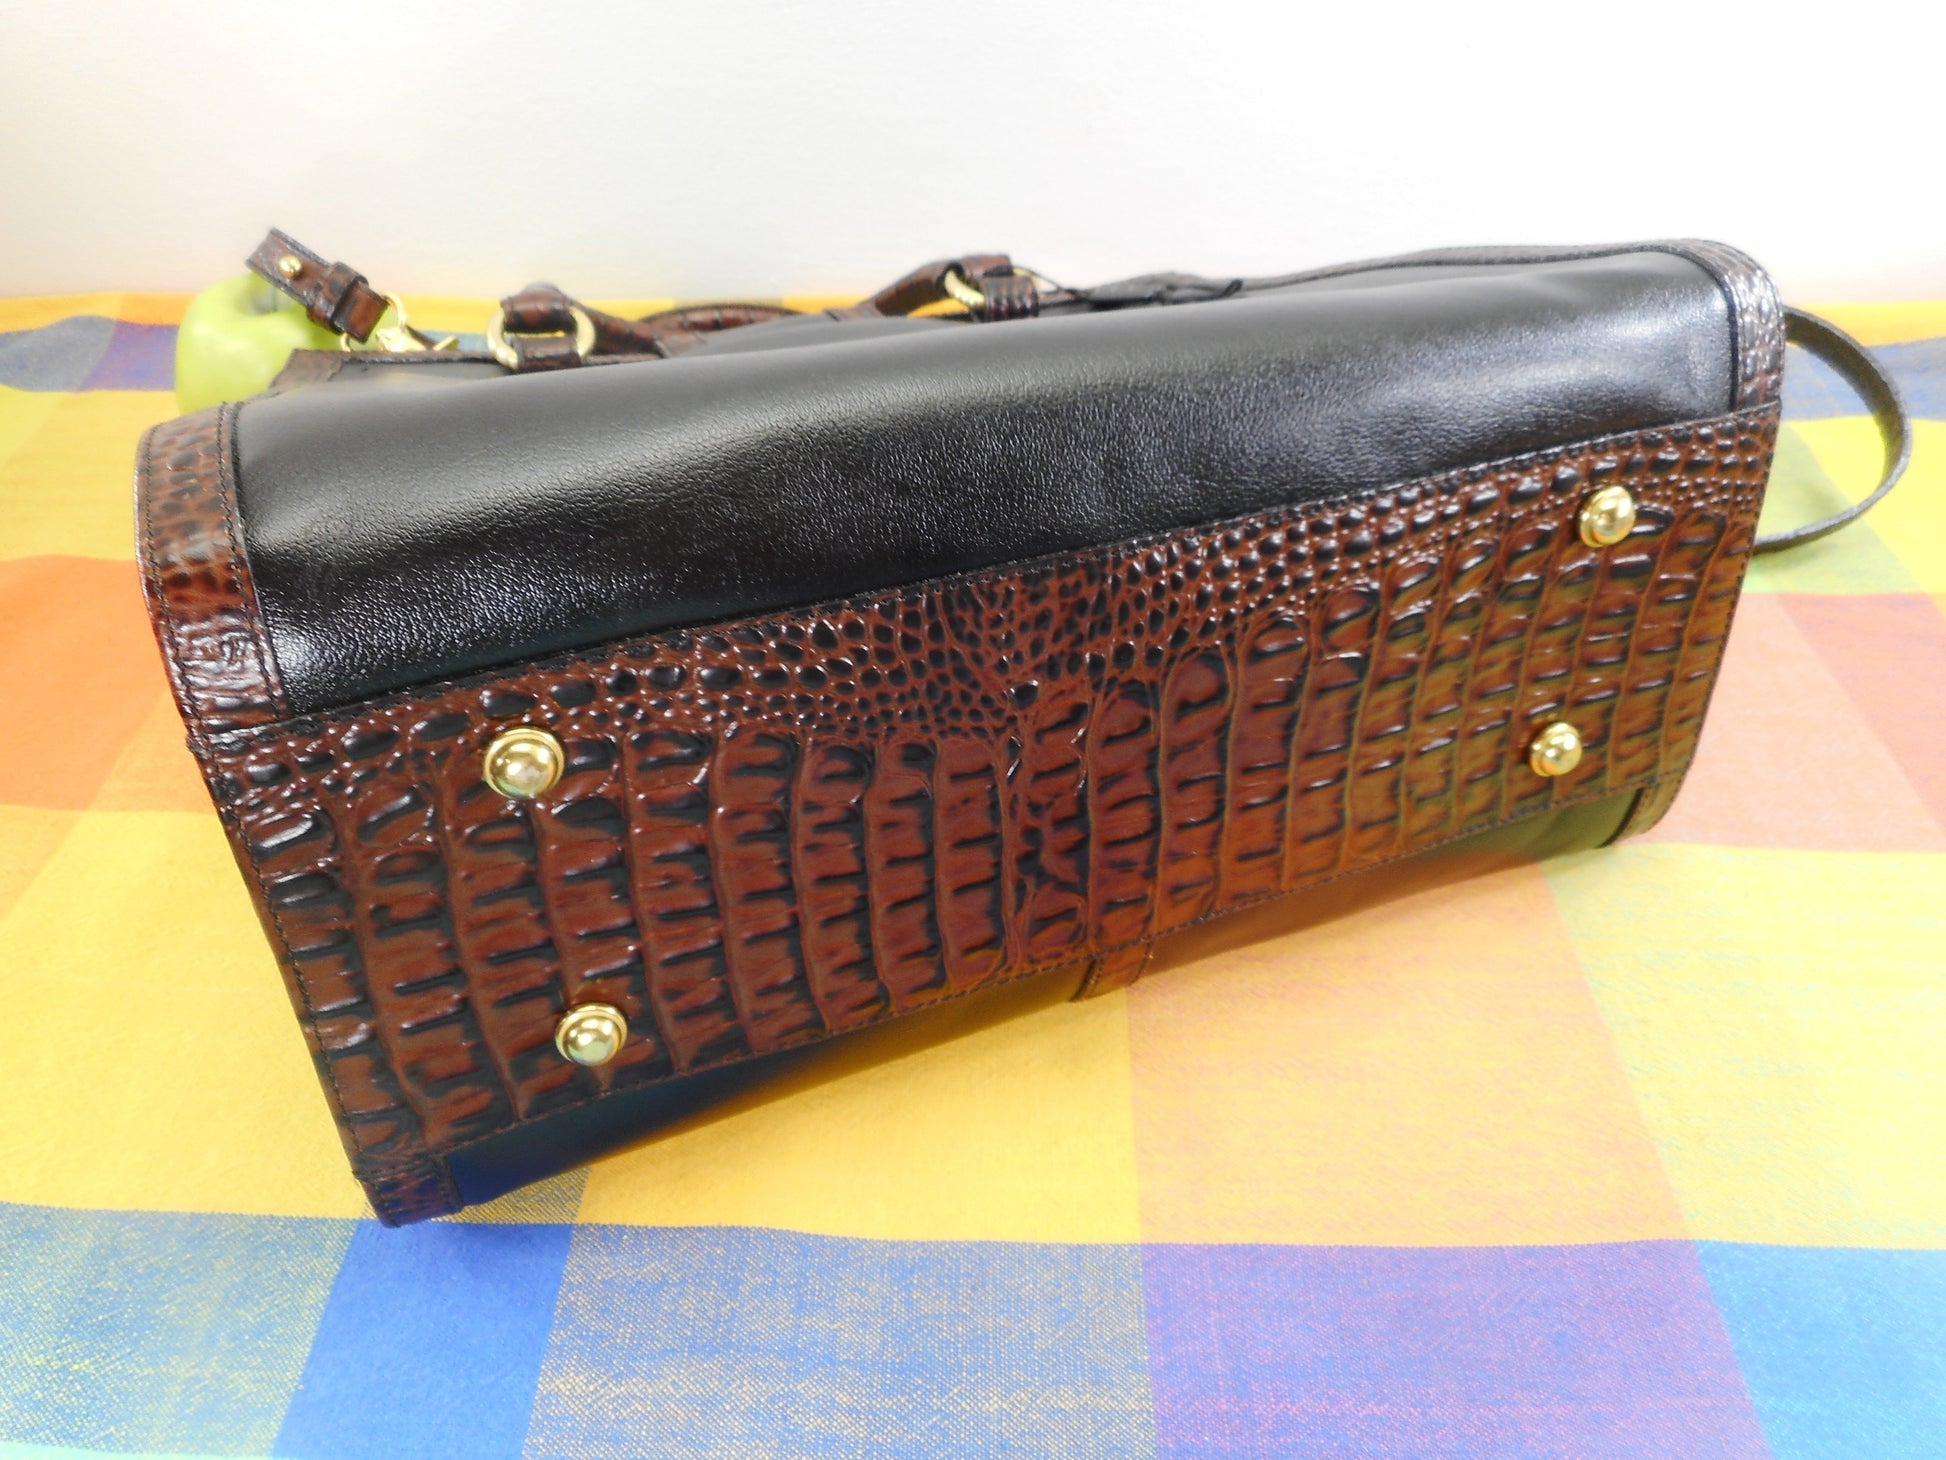 Brahmin Alligator Black Leather Satchel Handbag Shoulder Bag - Used Once EUC Purse